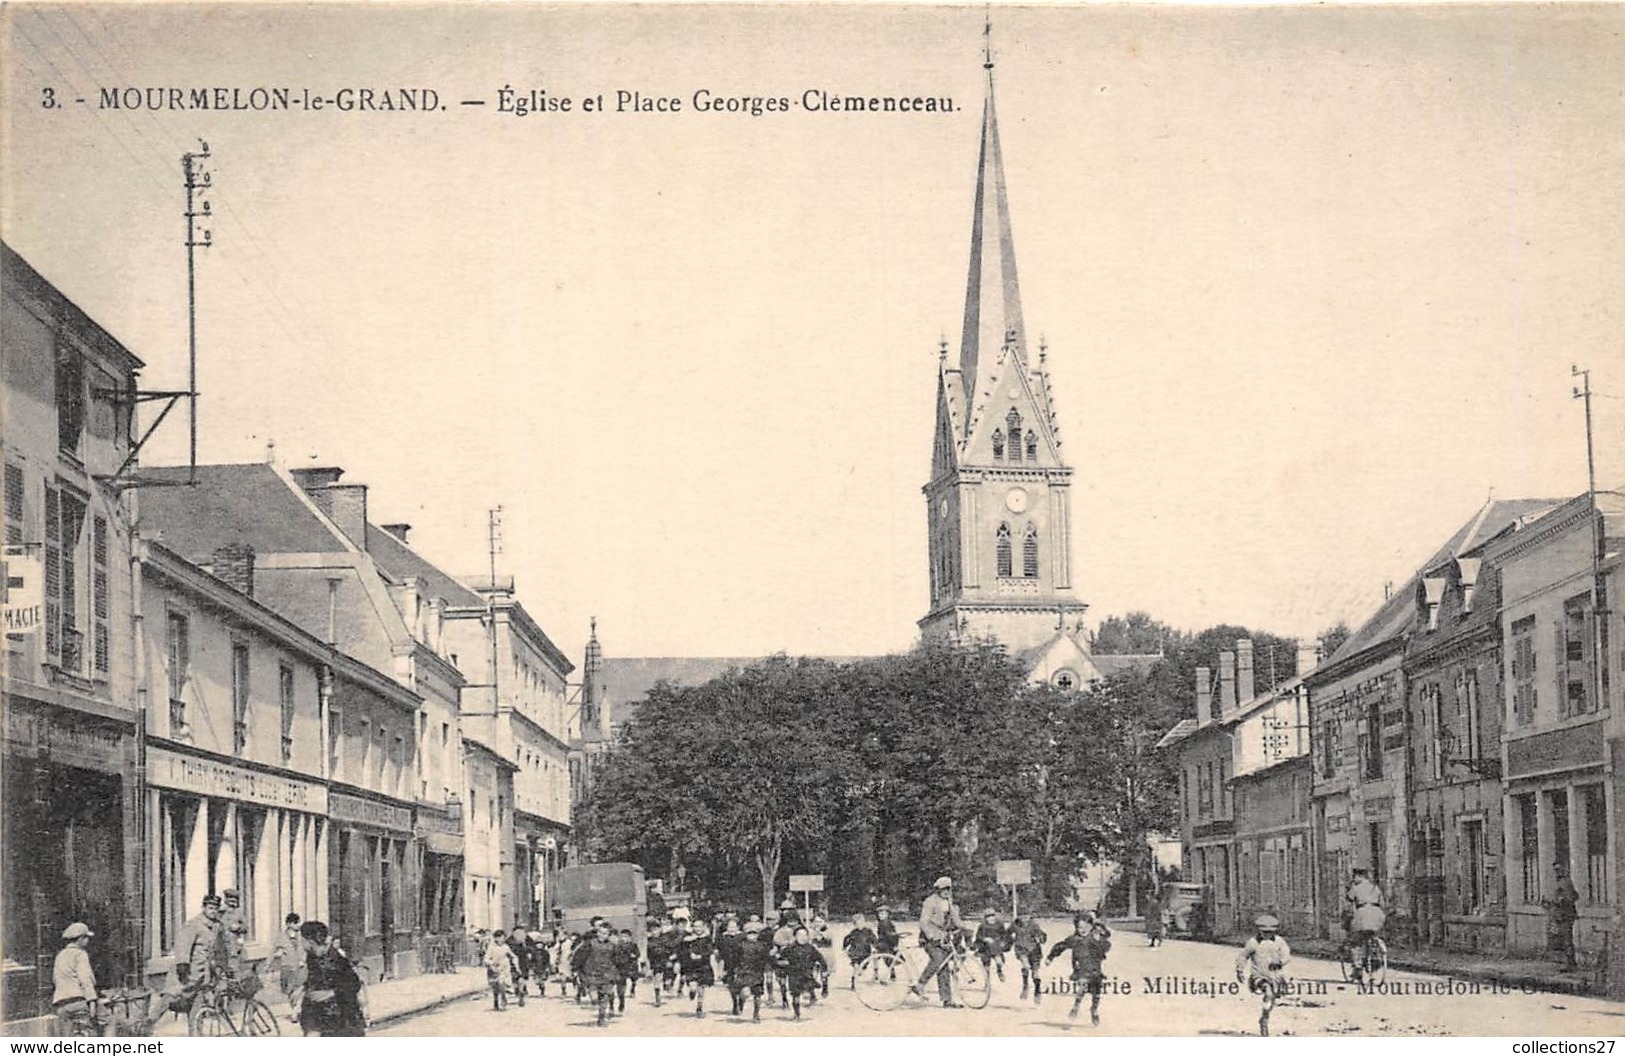 51-MORLEMON-LE-FRAND- EGLISE ET PLACE GEORGES CLEMENCEAU - Mourmelon Le Grand